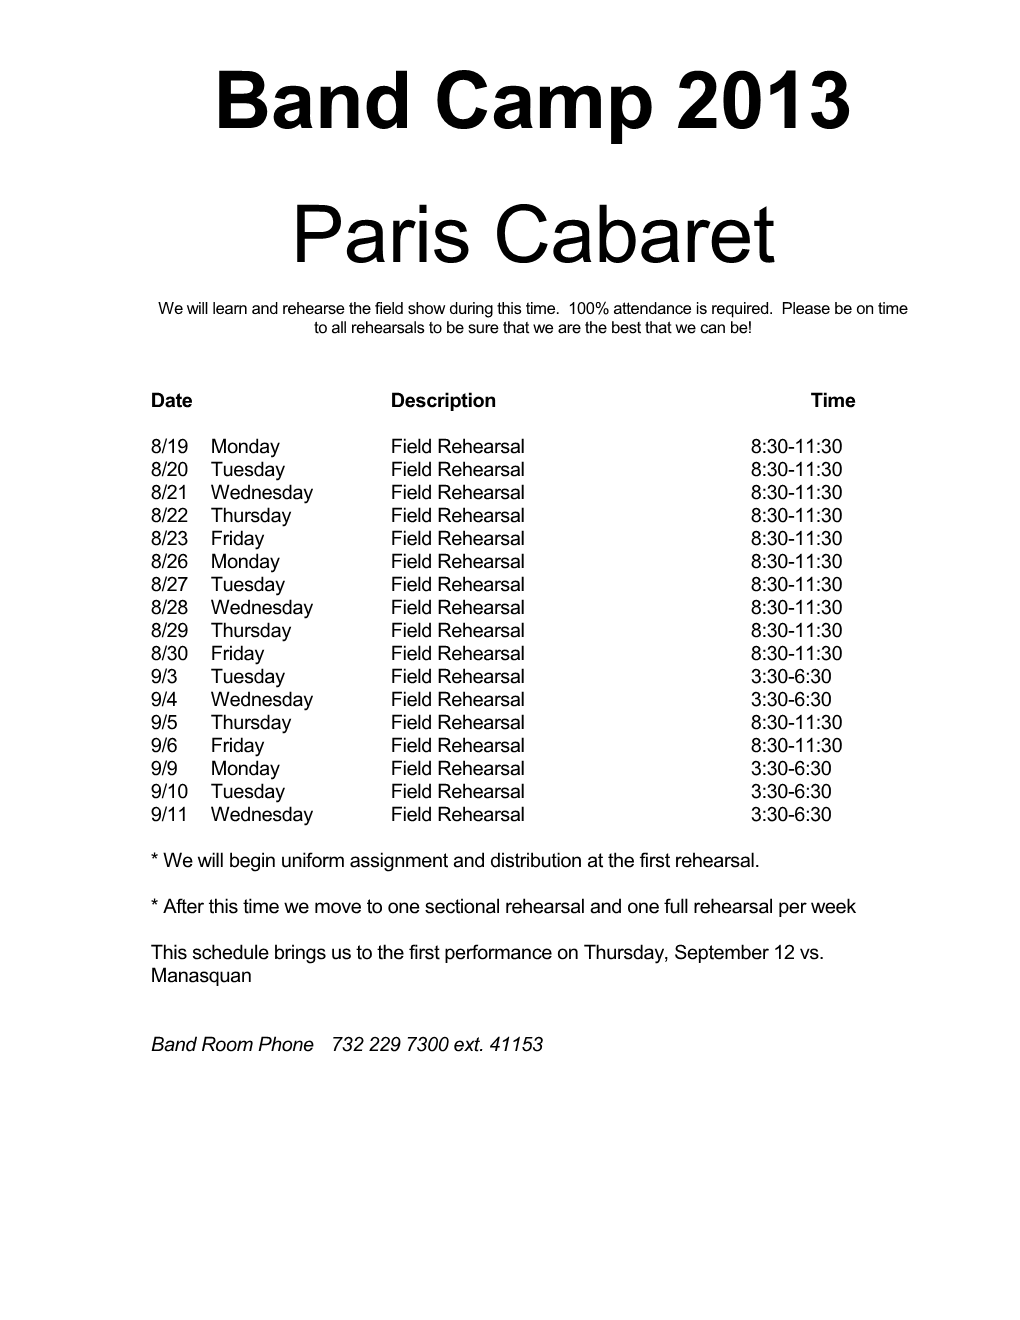 Paris Cabaret